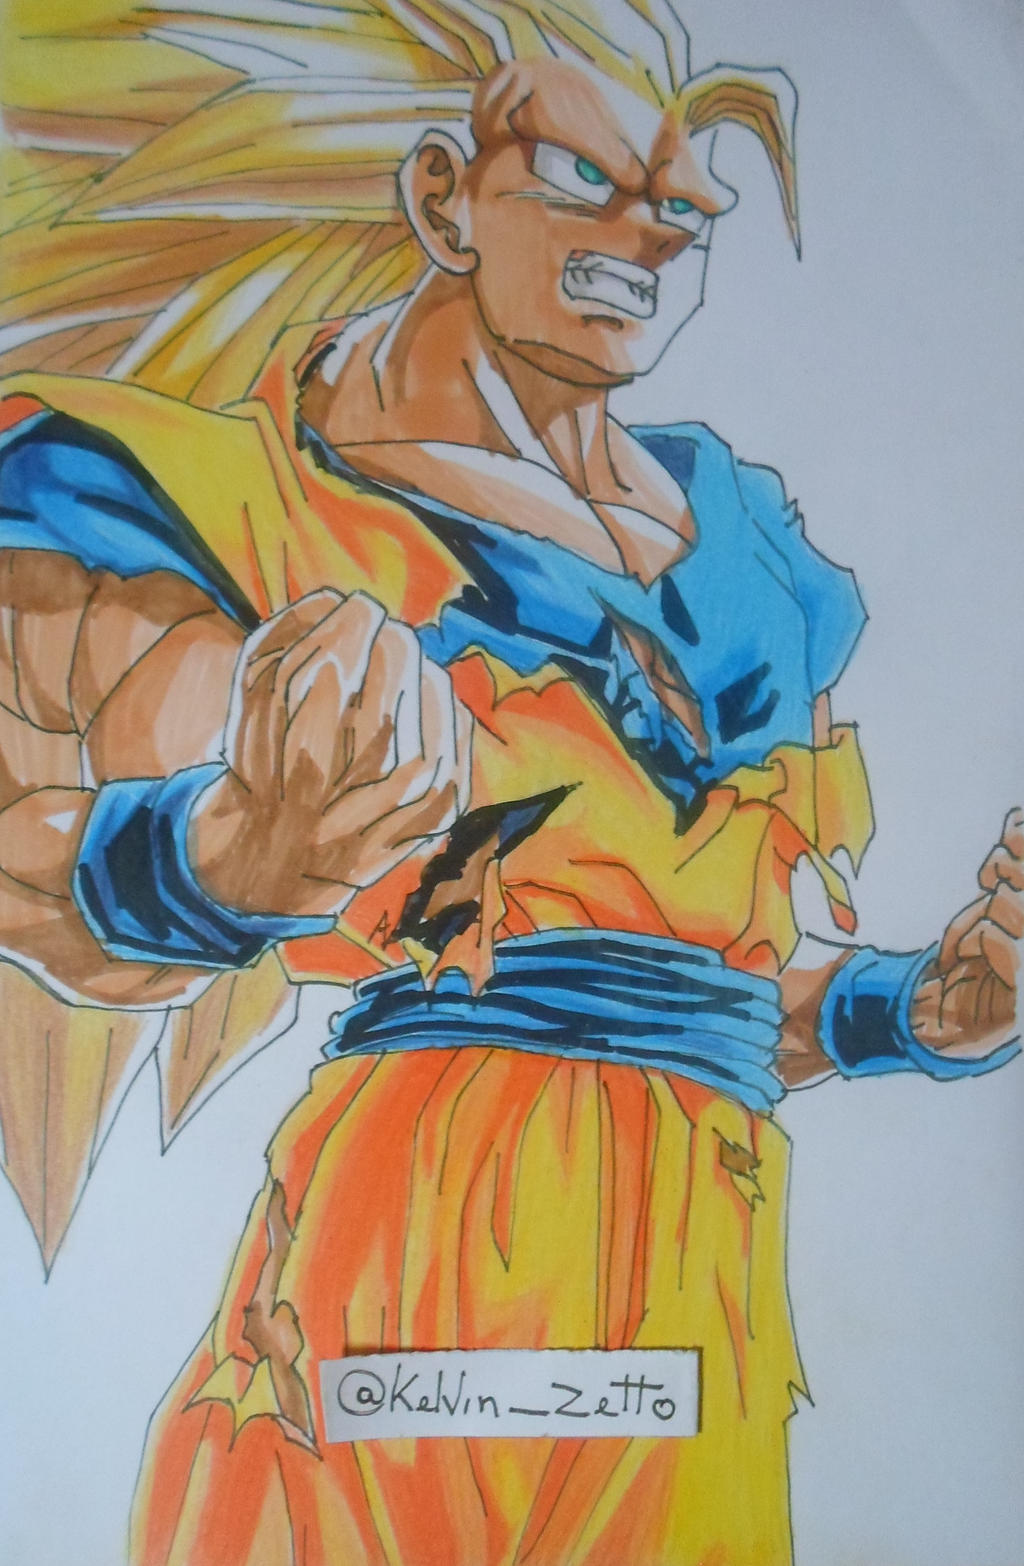 Goku Super Saiyan 3 Illustration on Behance